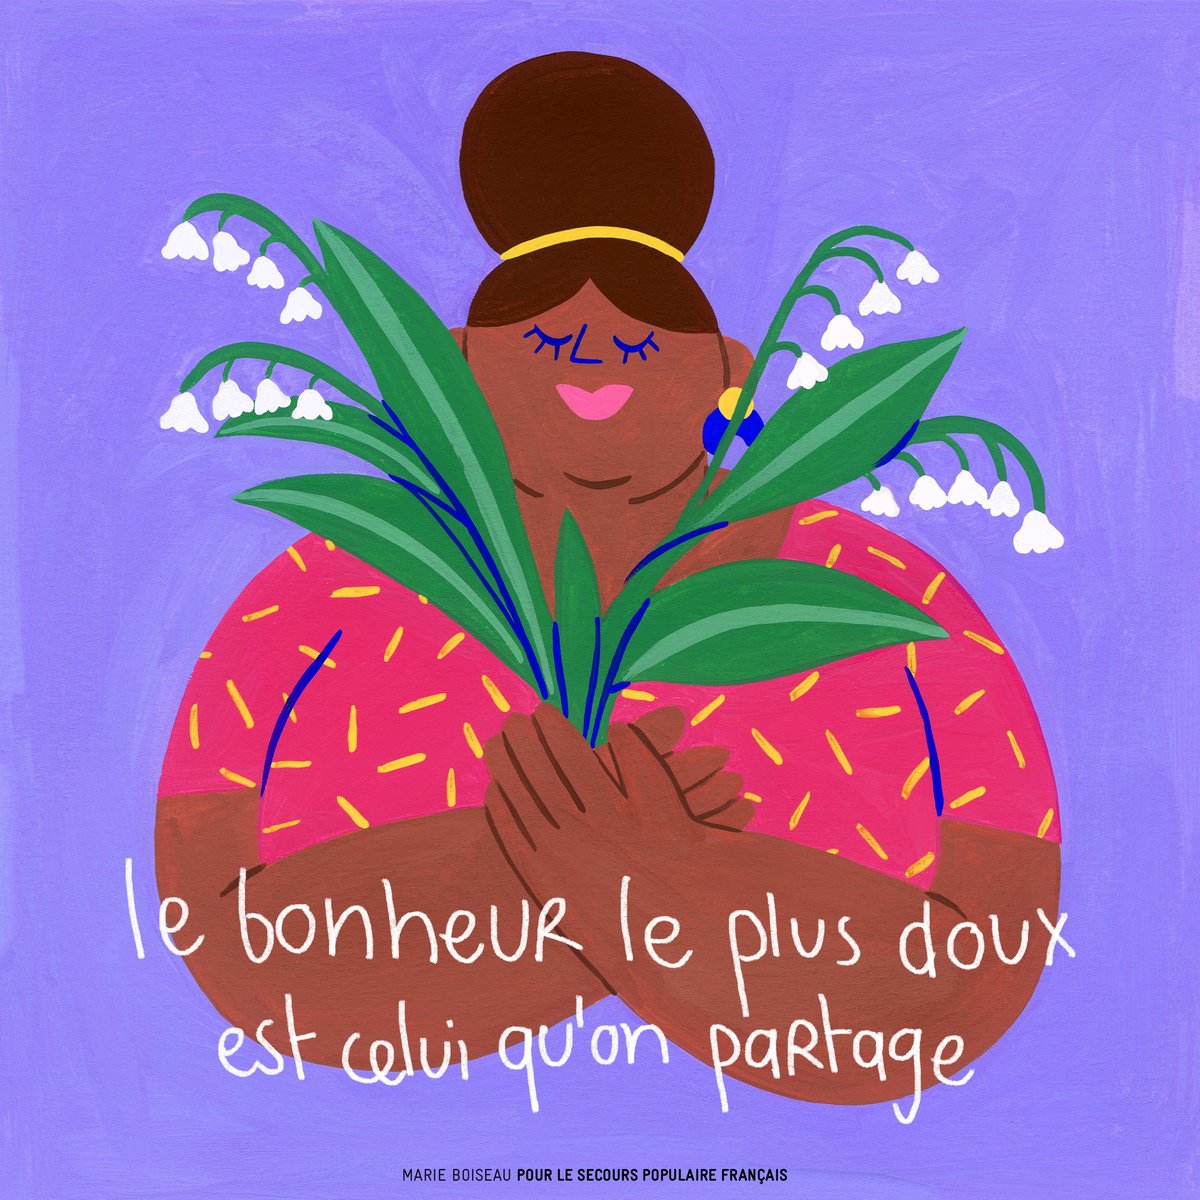 En ce 1er mai, fêtons tous ensemble la solidarité !
👉Faire un don ou devenir bénévole 📷 bit.ly/49q2e2h
🎨 Illustration de Marie Boiseau